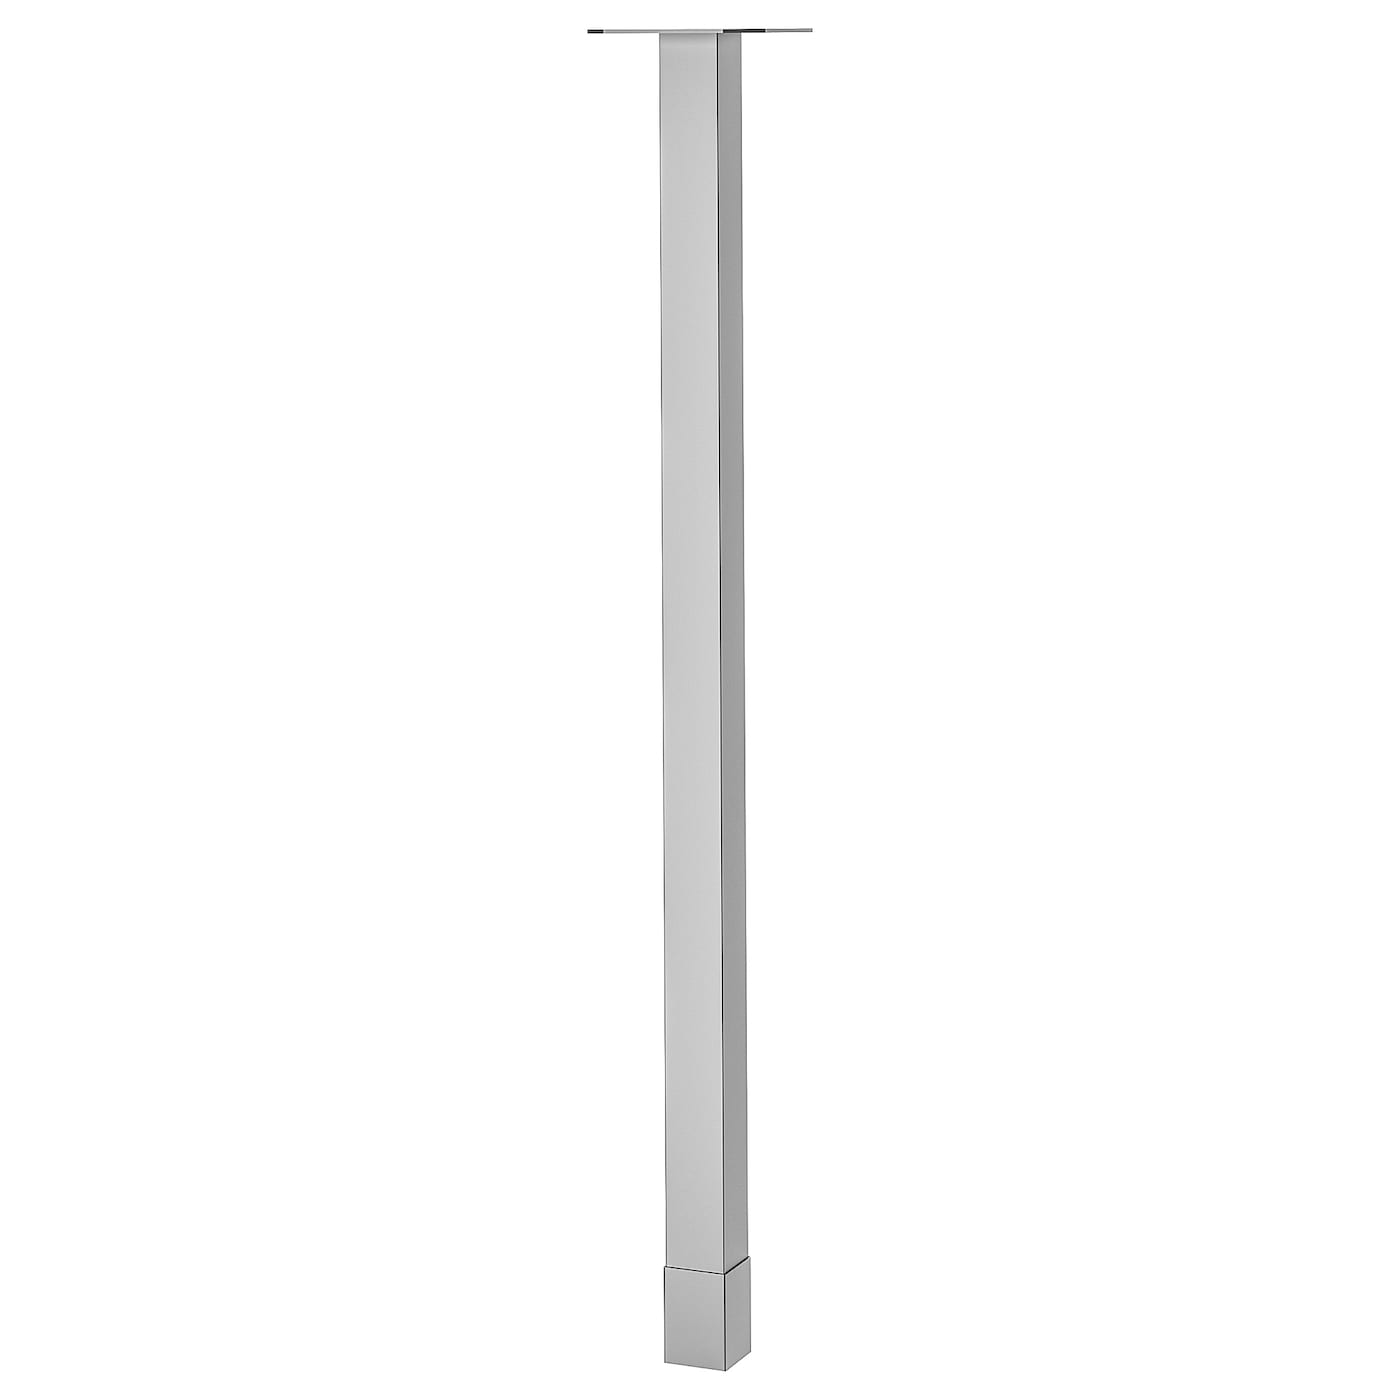 Ножка - IKEA UTBY, 88 см, нержавеющая сталь, УТБИ ИКЕА